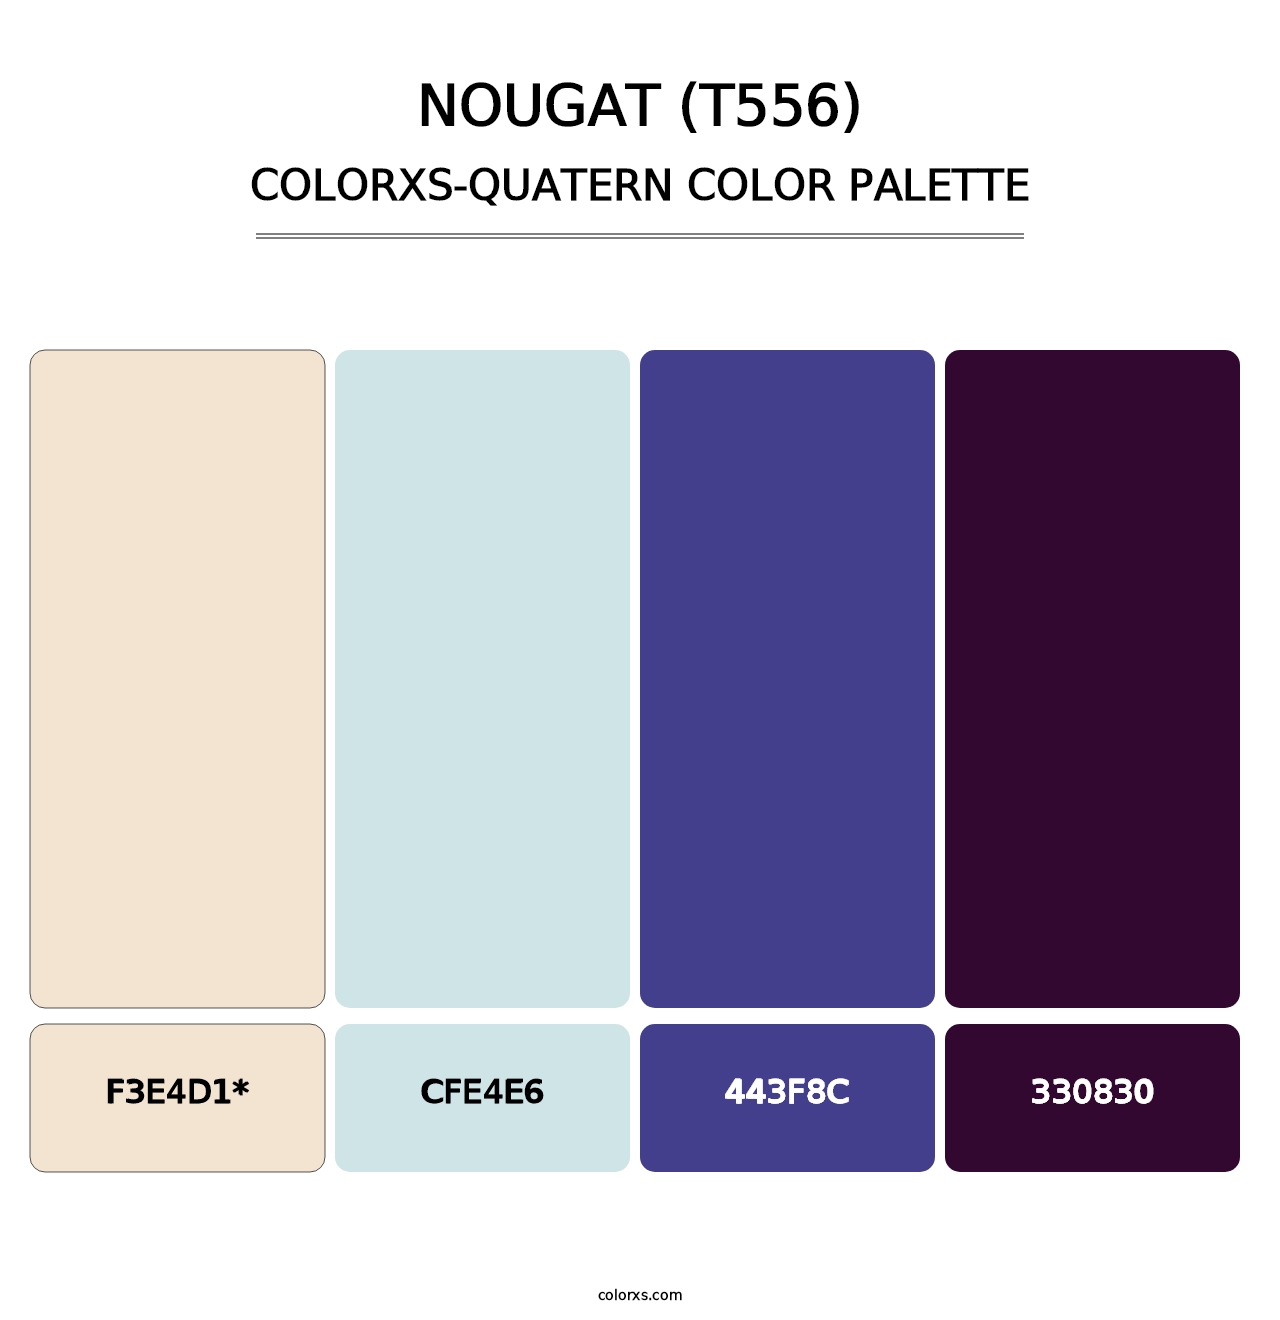 Nougat (T556) - Colorxs Quad Palette